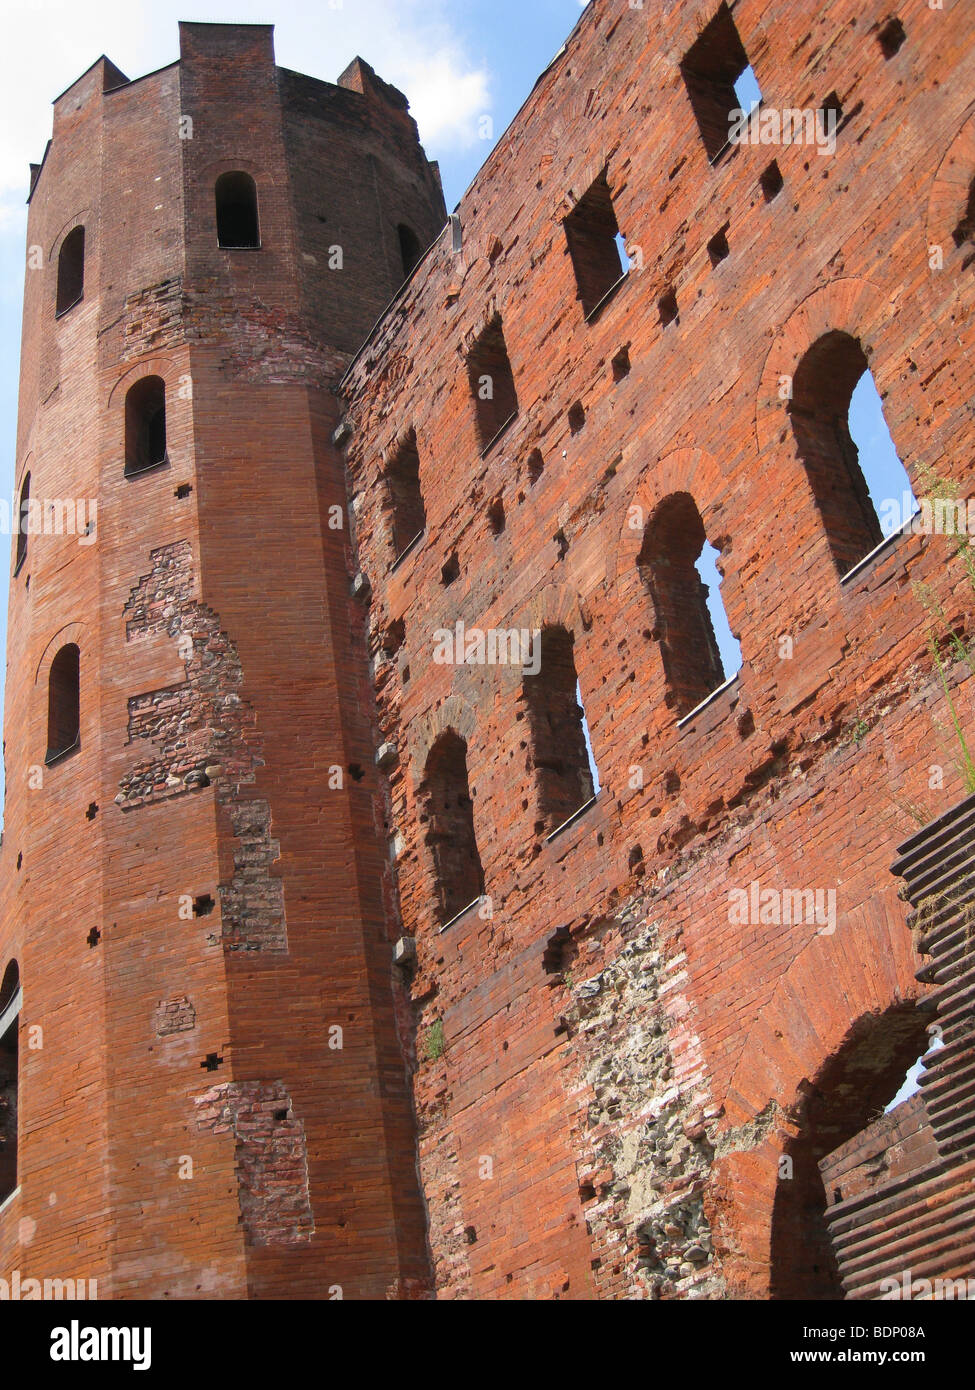 Die alten römisch-mittelalterliche Struktur Pfälzer Türme oder Porta Palatina in Turin, Turin Hauptstadt der Region Piemont, Italien Stockfoto